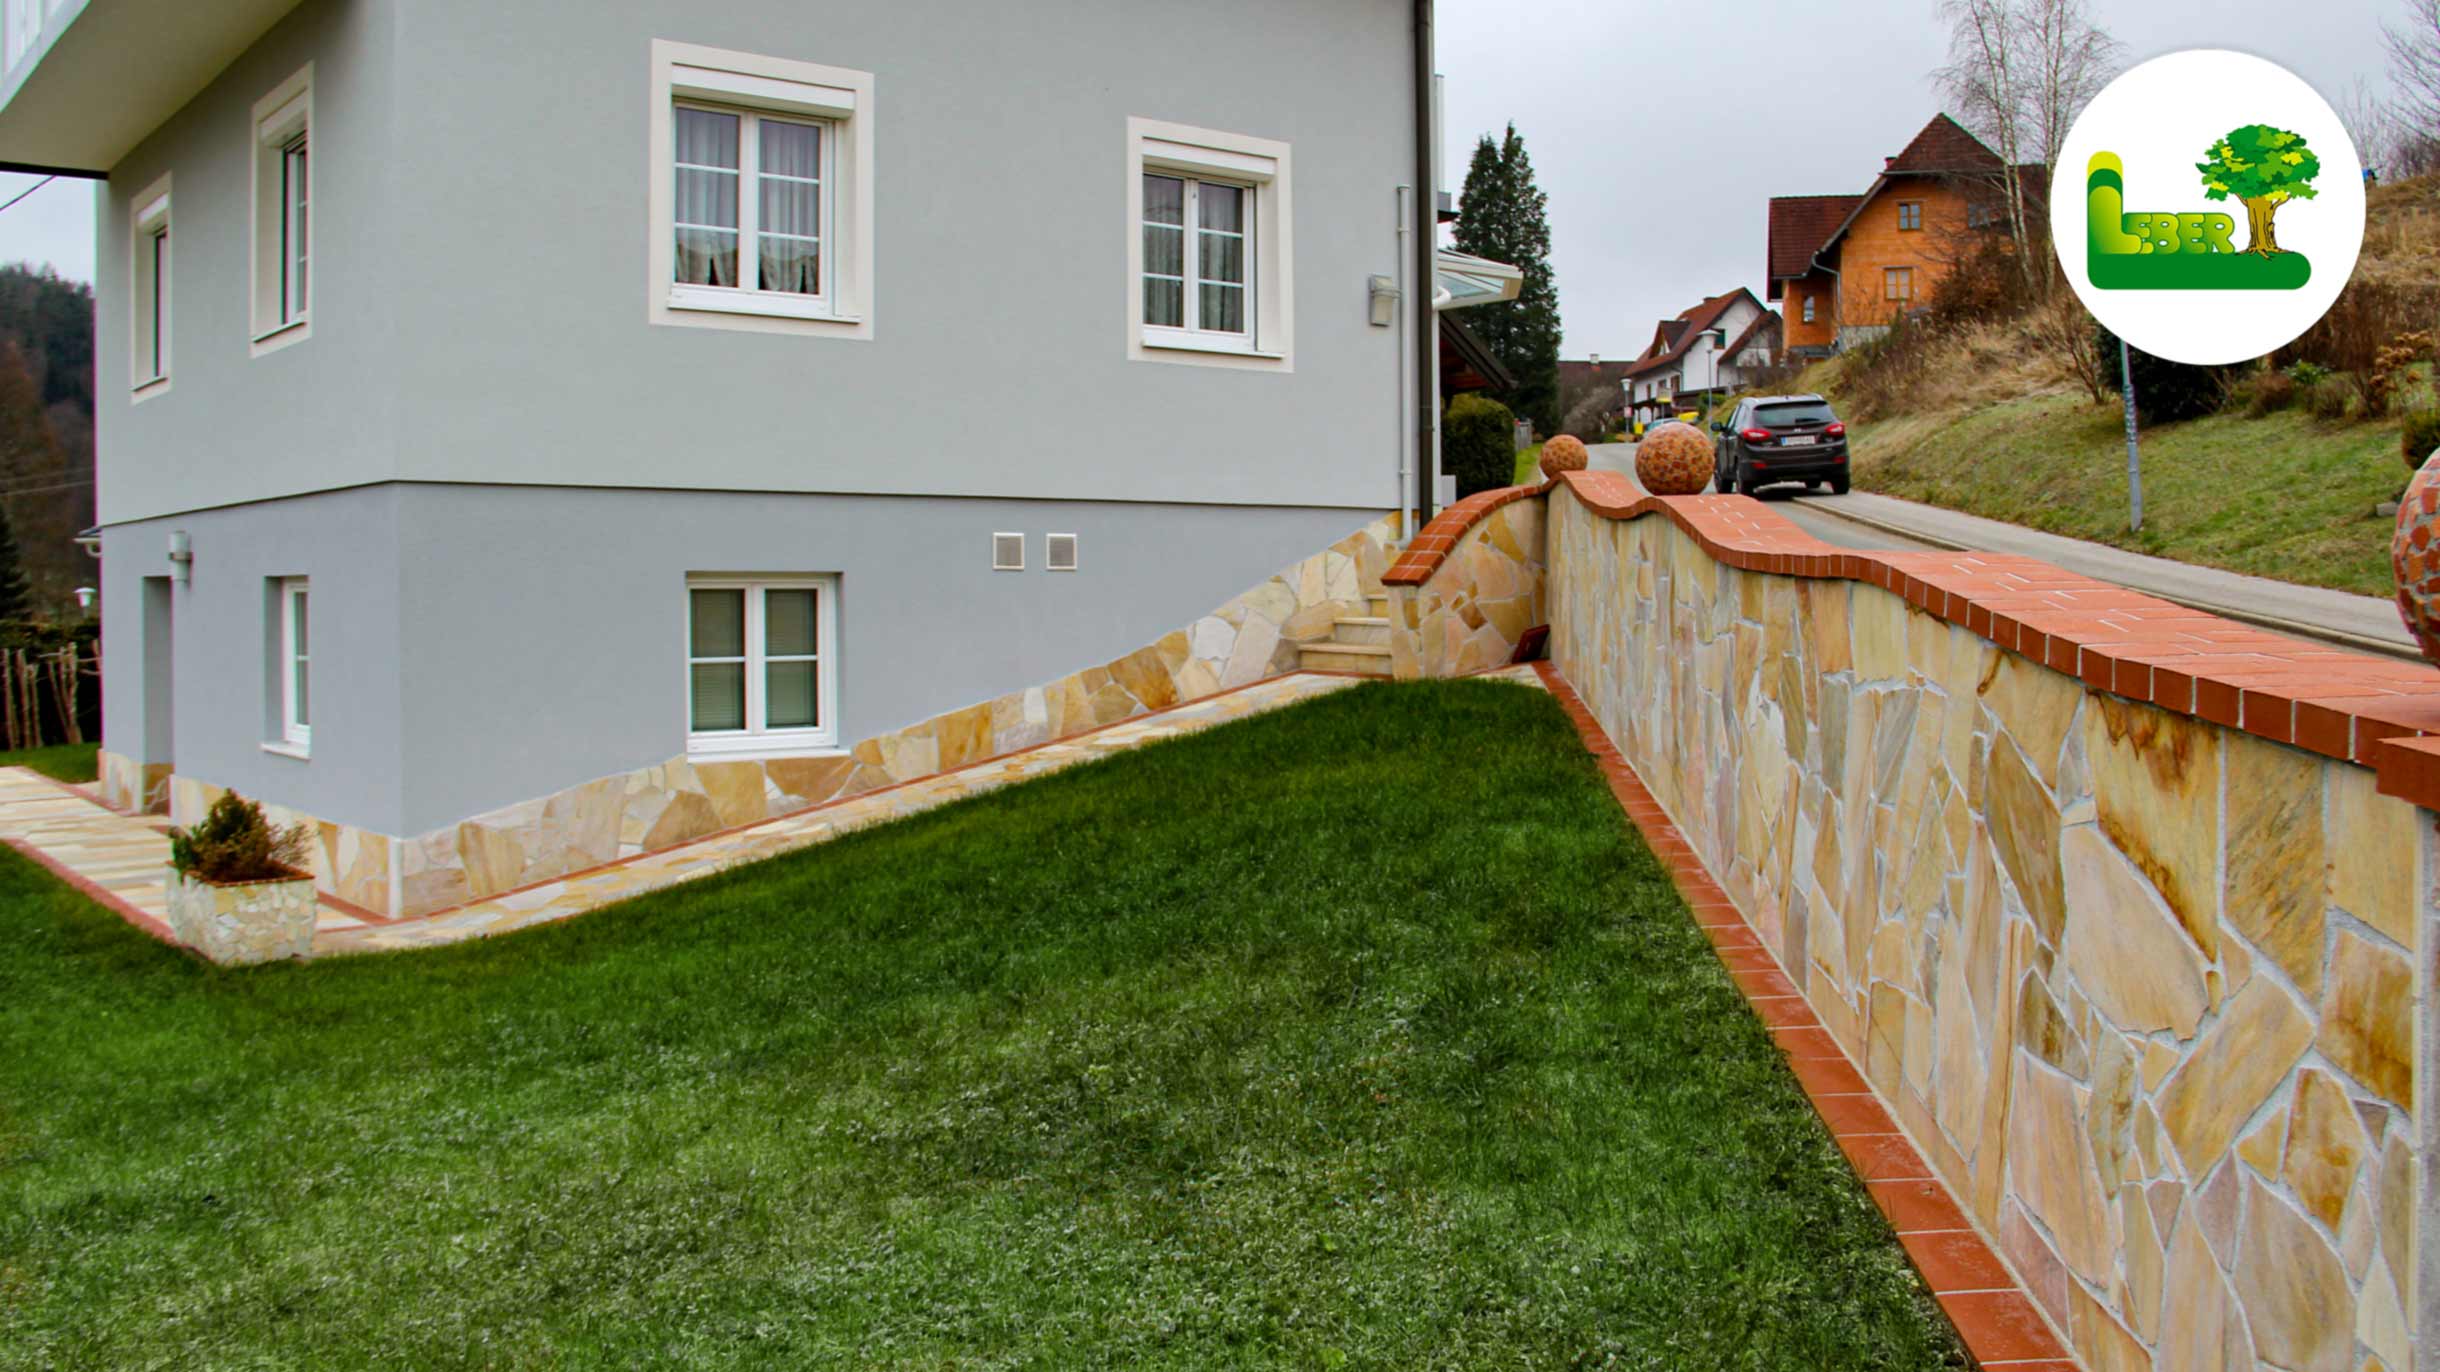 Pflasterung und Gartenmauer aus Naturstein brasilianischer Quarzit und Klinkerabdeckung